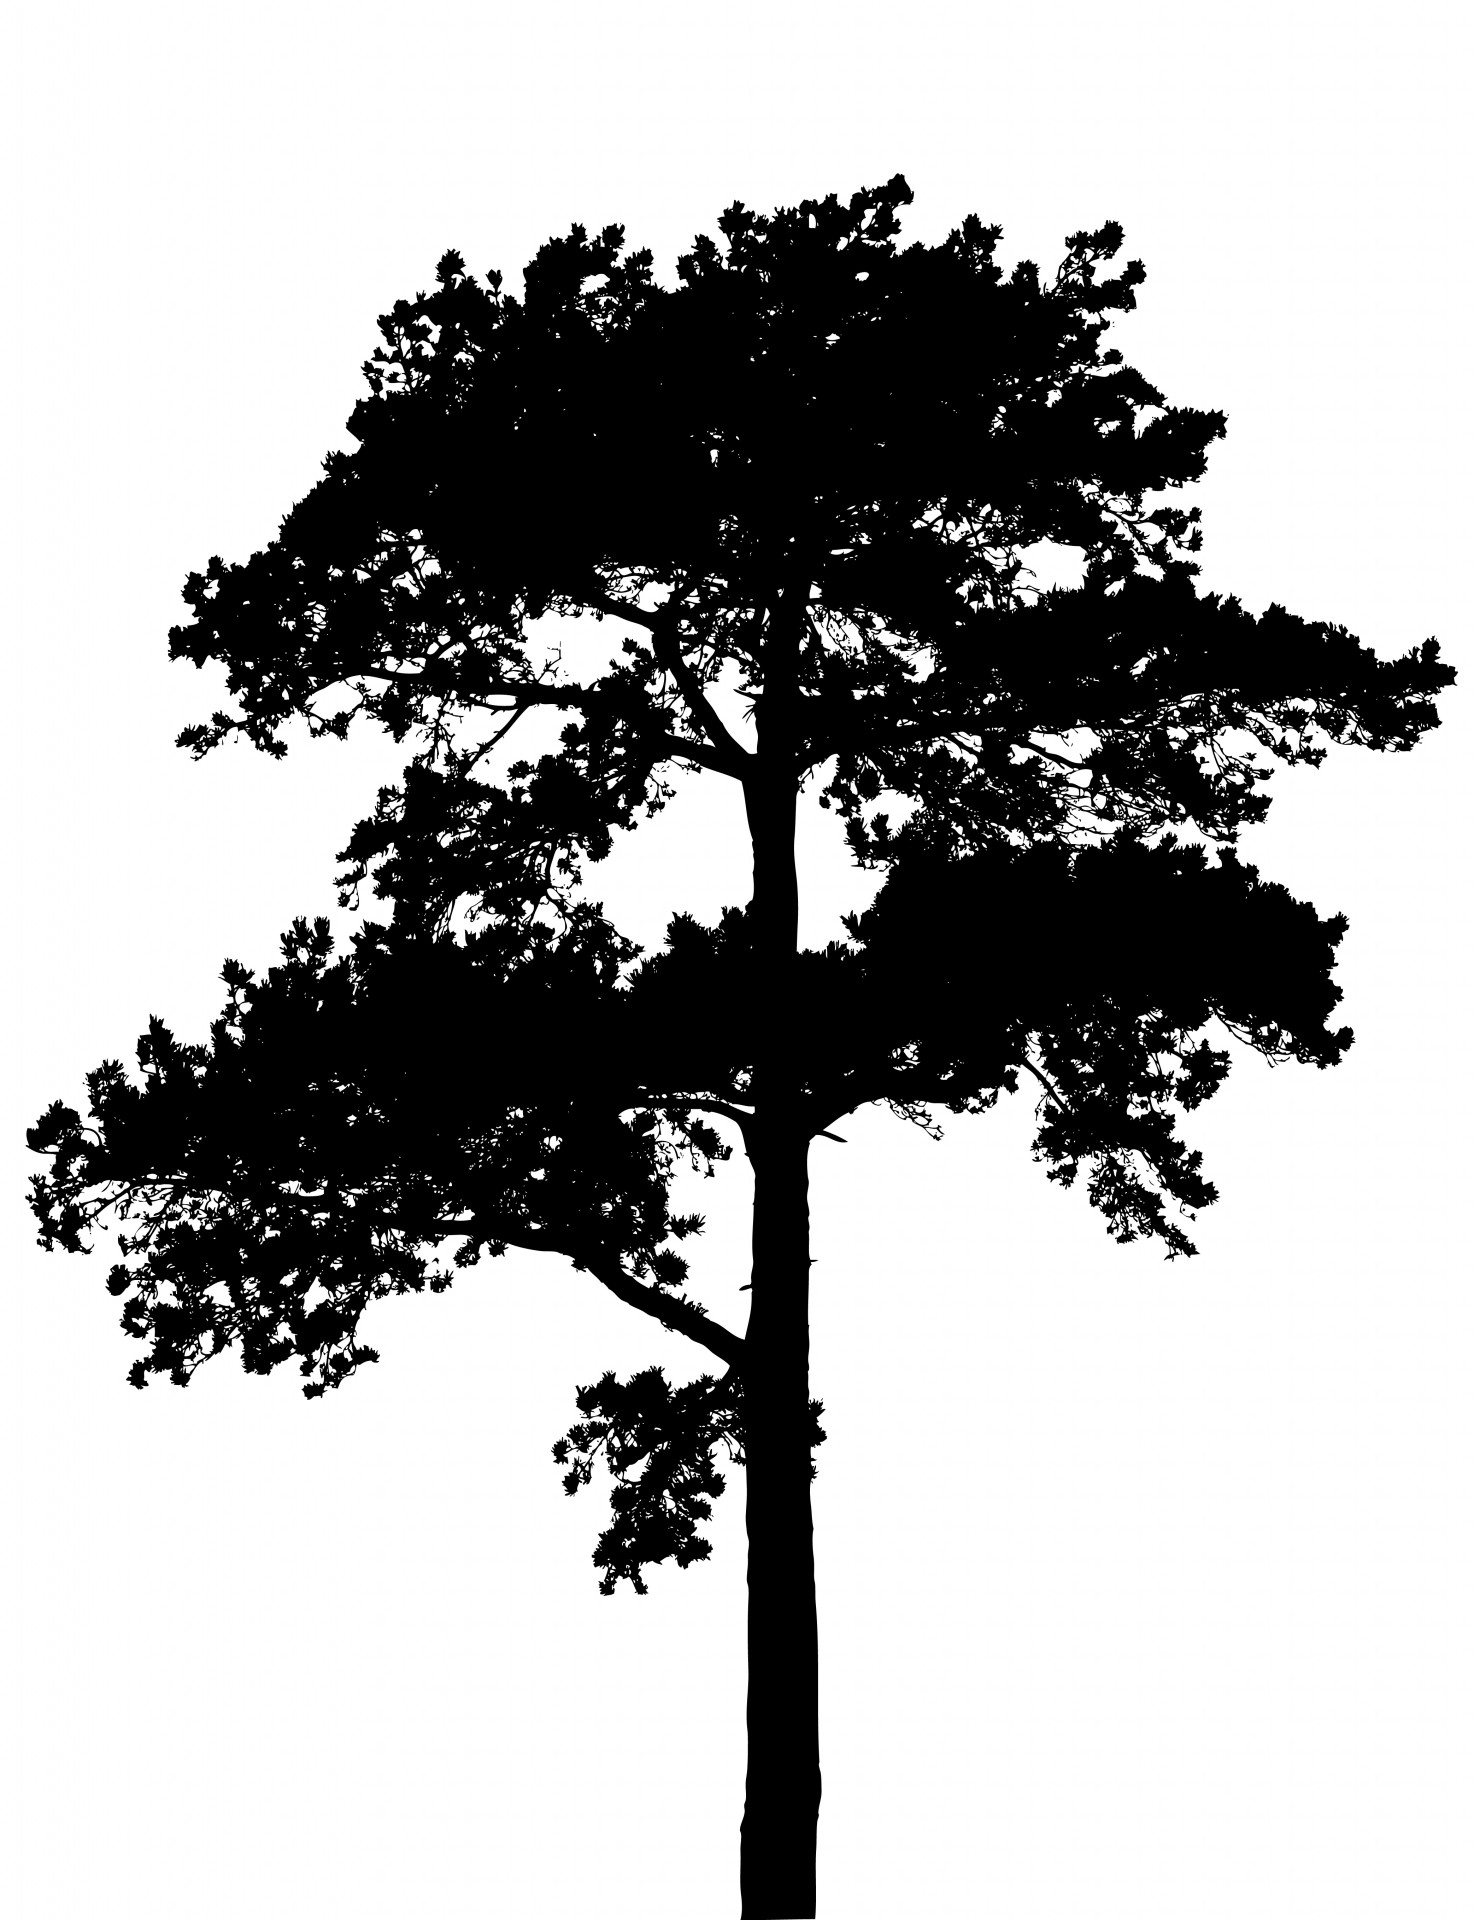 Tree silhouette photo